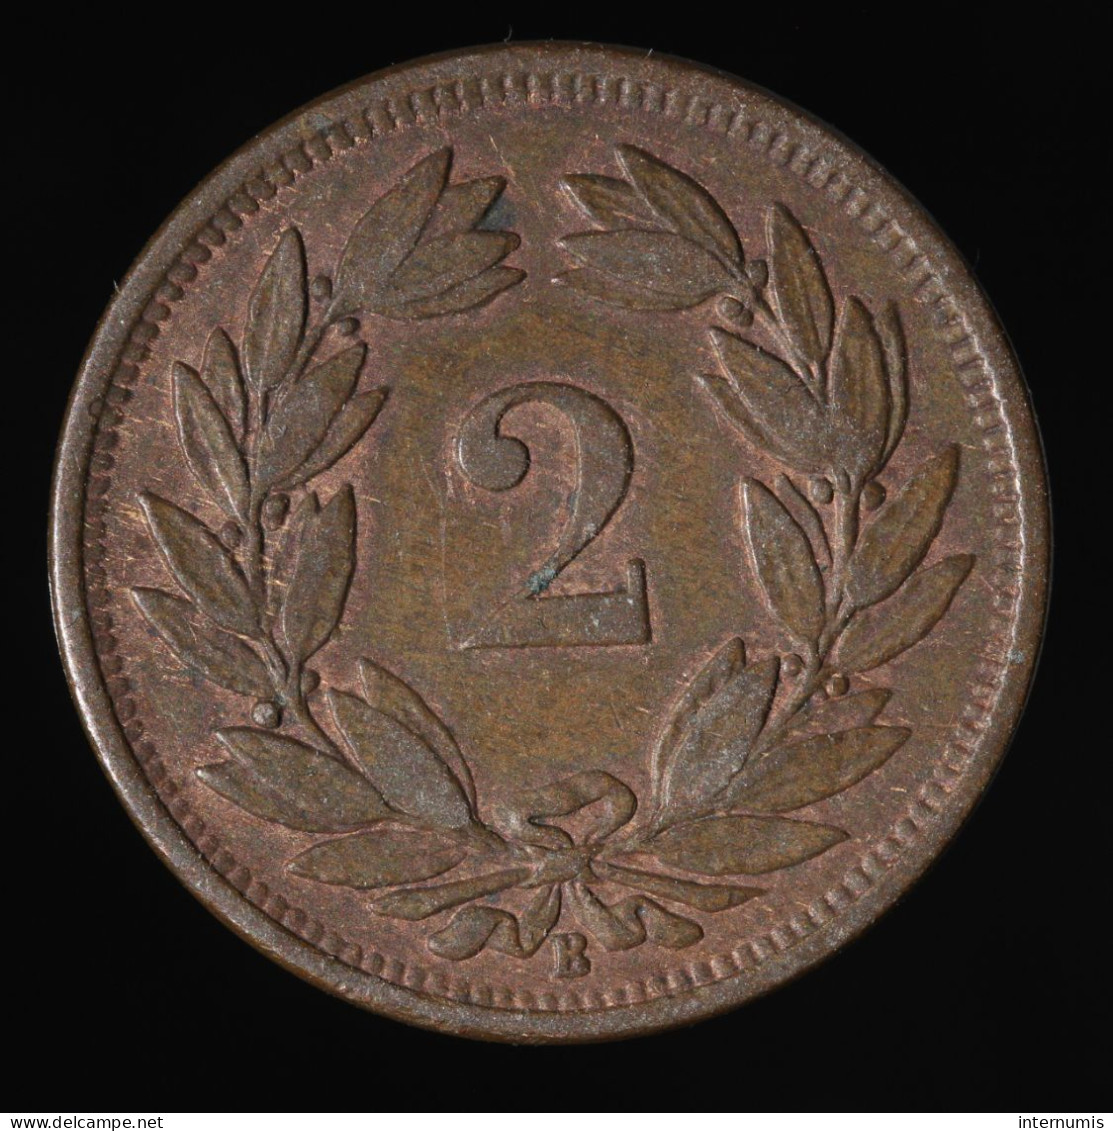  Suisse / Switzerland, , 2 Rappen, 1870, Bern, Bronze, TTB (EF),
KM#4.1 - 20 Franken (gold)